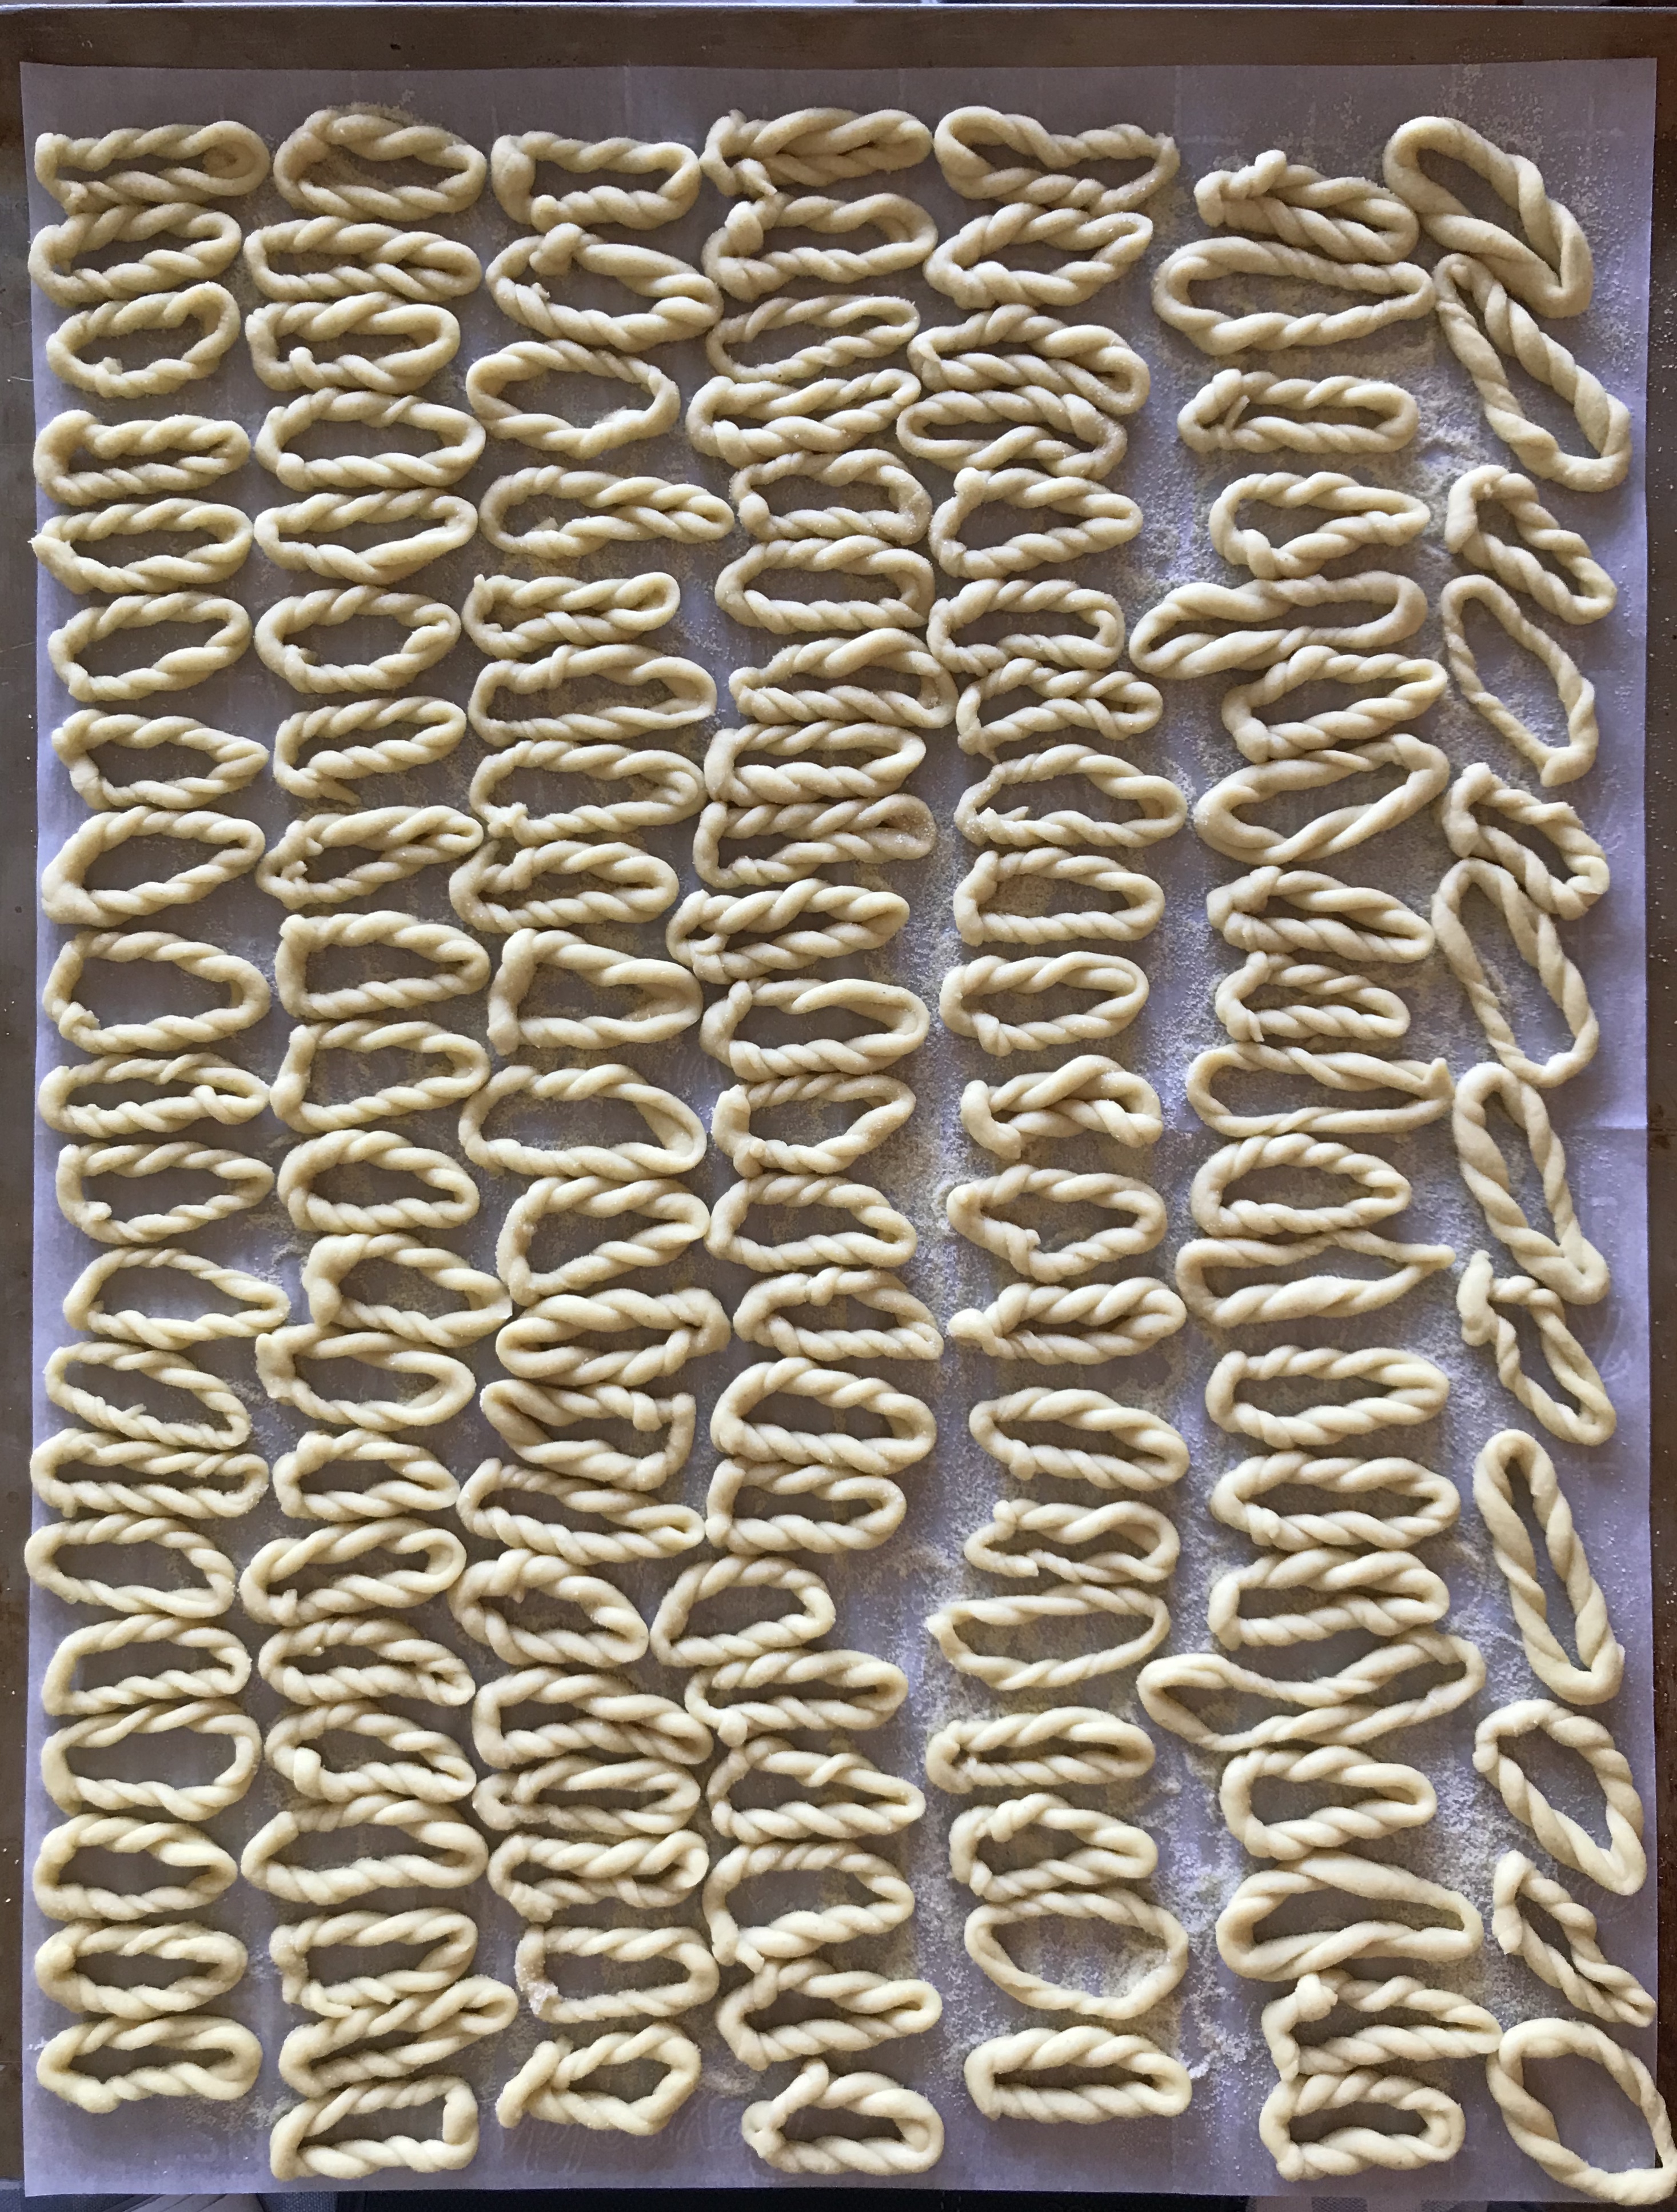 A sheet pan of fresh pasta.